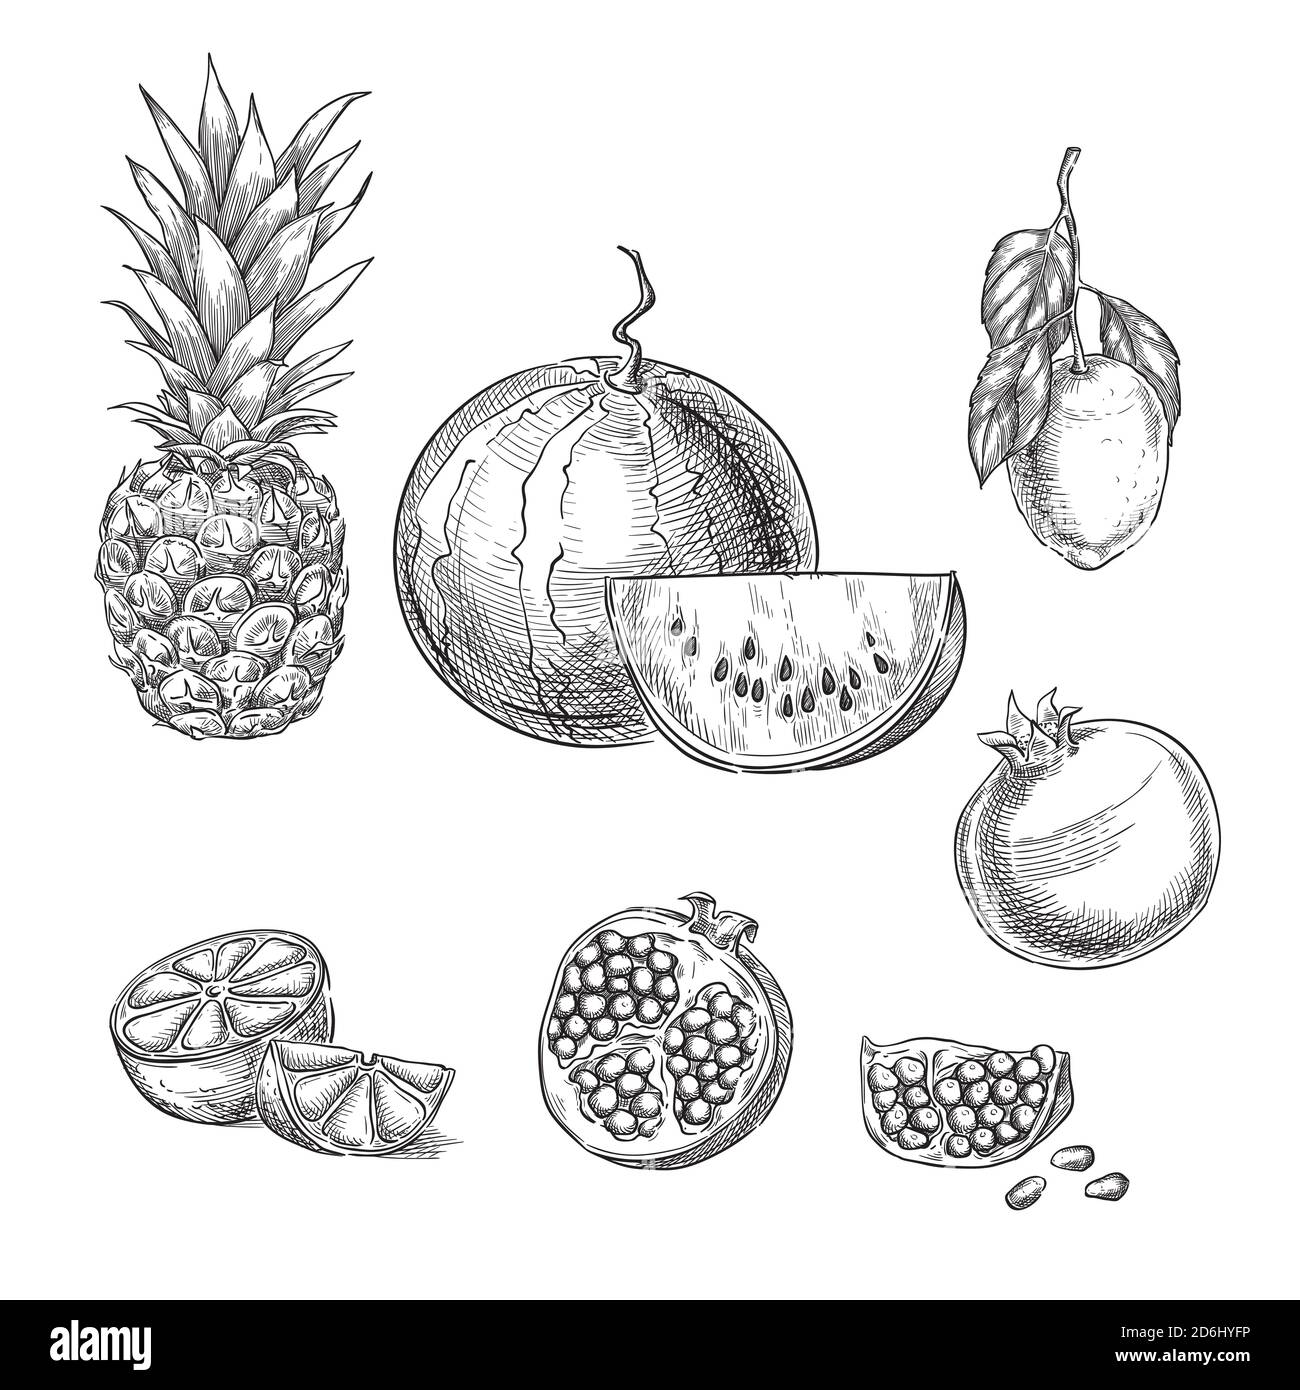 Illustrazione vettoriale dello schizzo di frutti tropicali. Ananas, limone, anguria, melograno elementi di design isolati disegnati a mano. Illustrazione Vettoriale